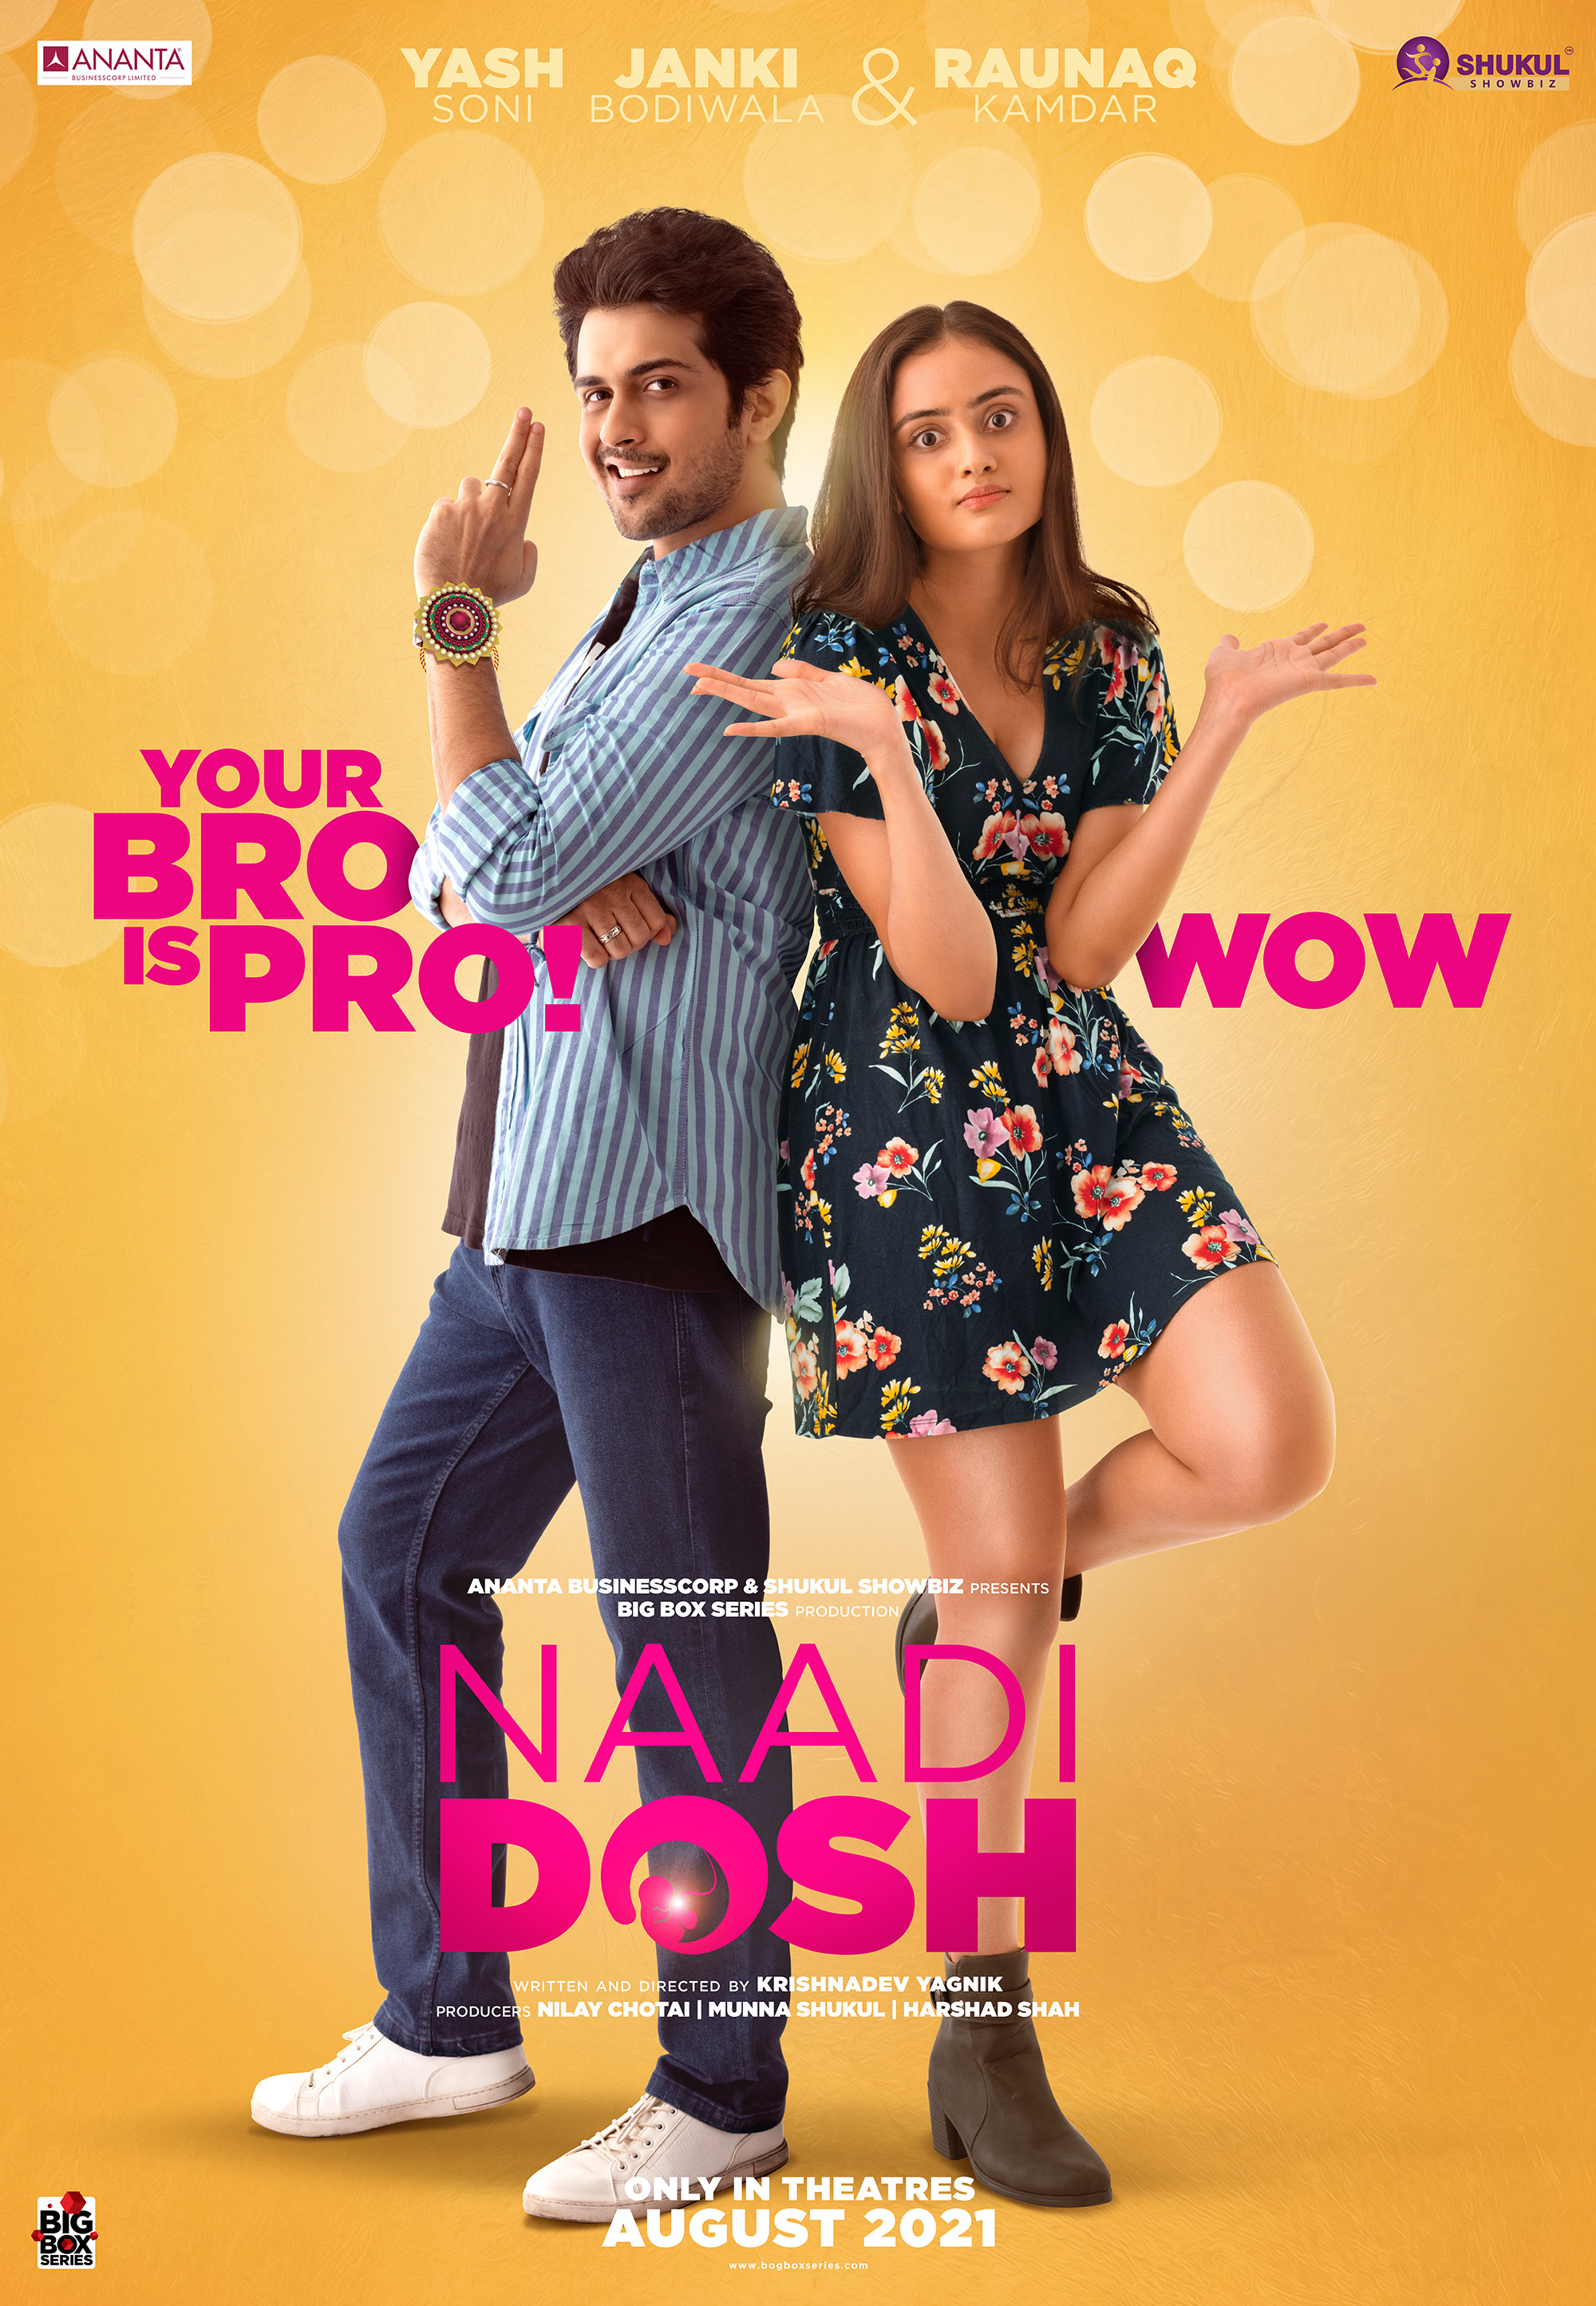 Mega Sized Movie Poster Image for Naadi Dosh (#2 of 4)